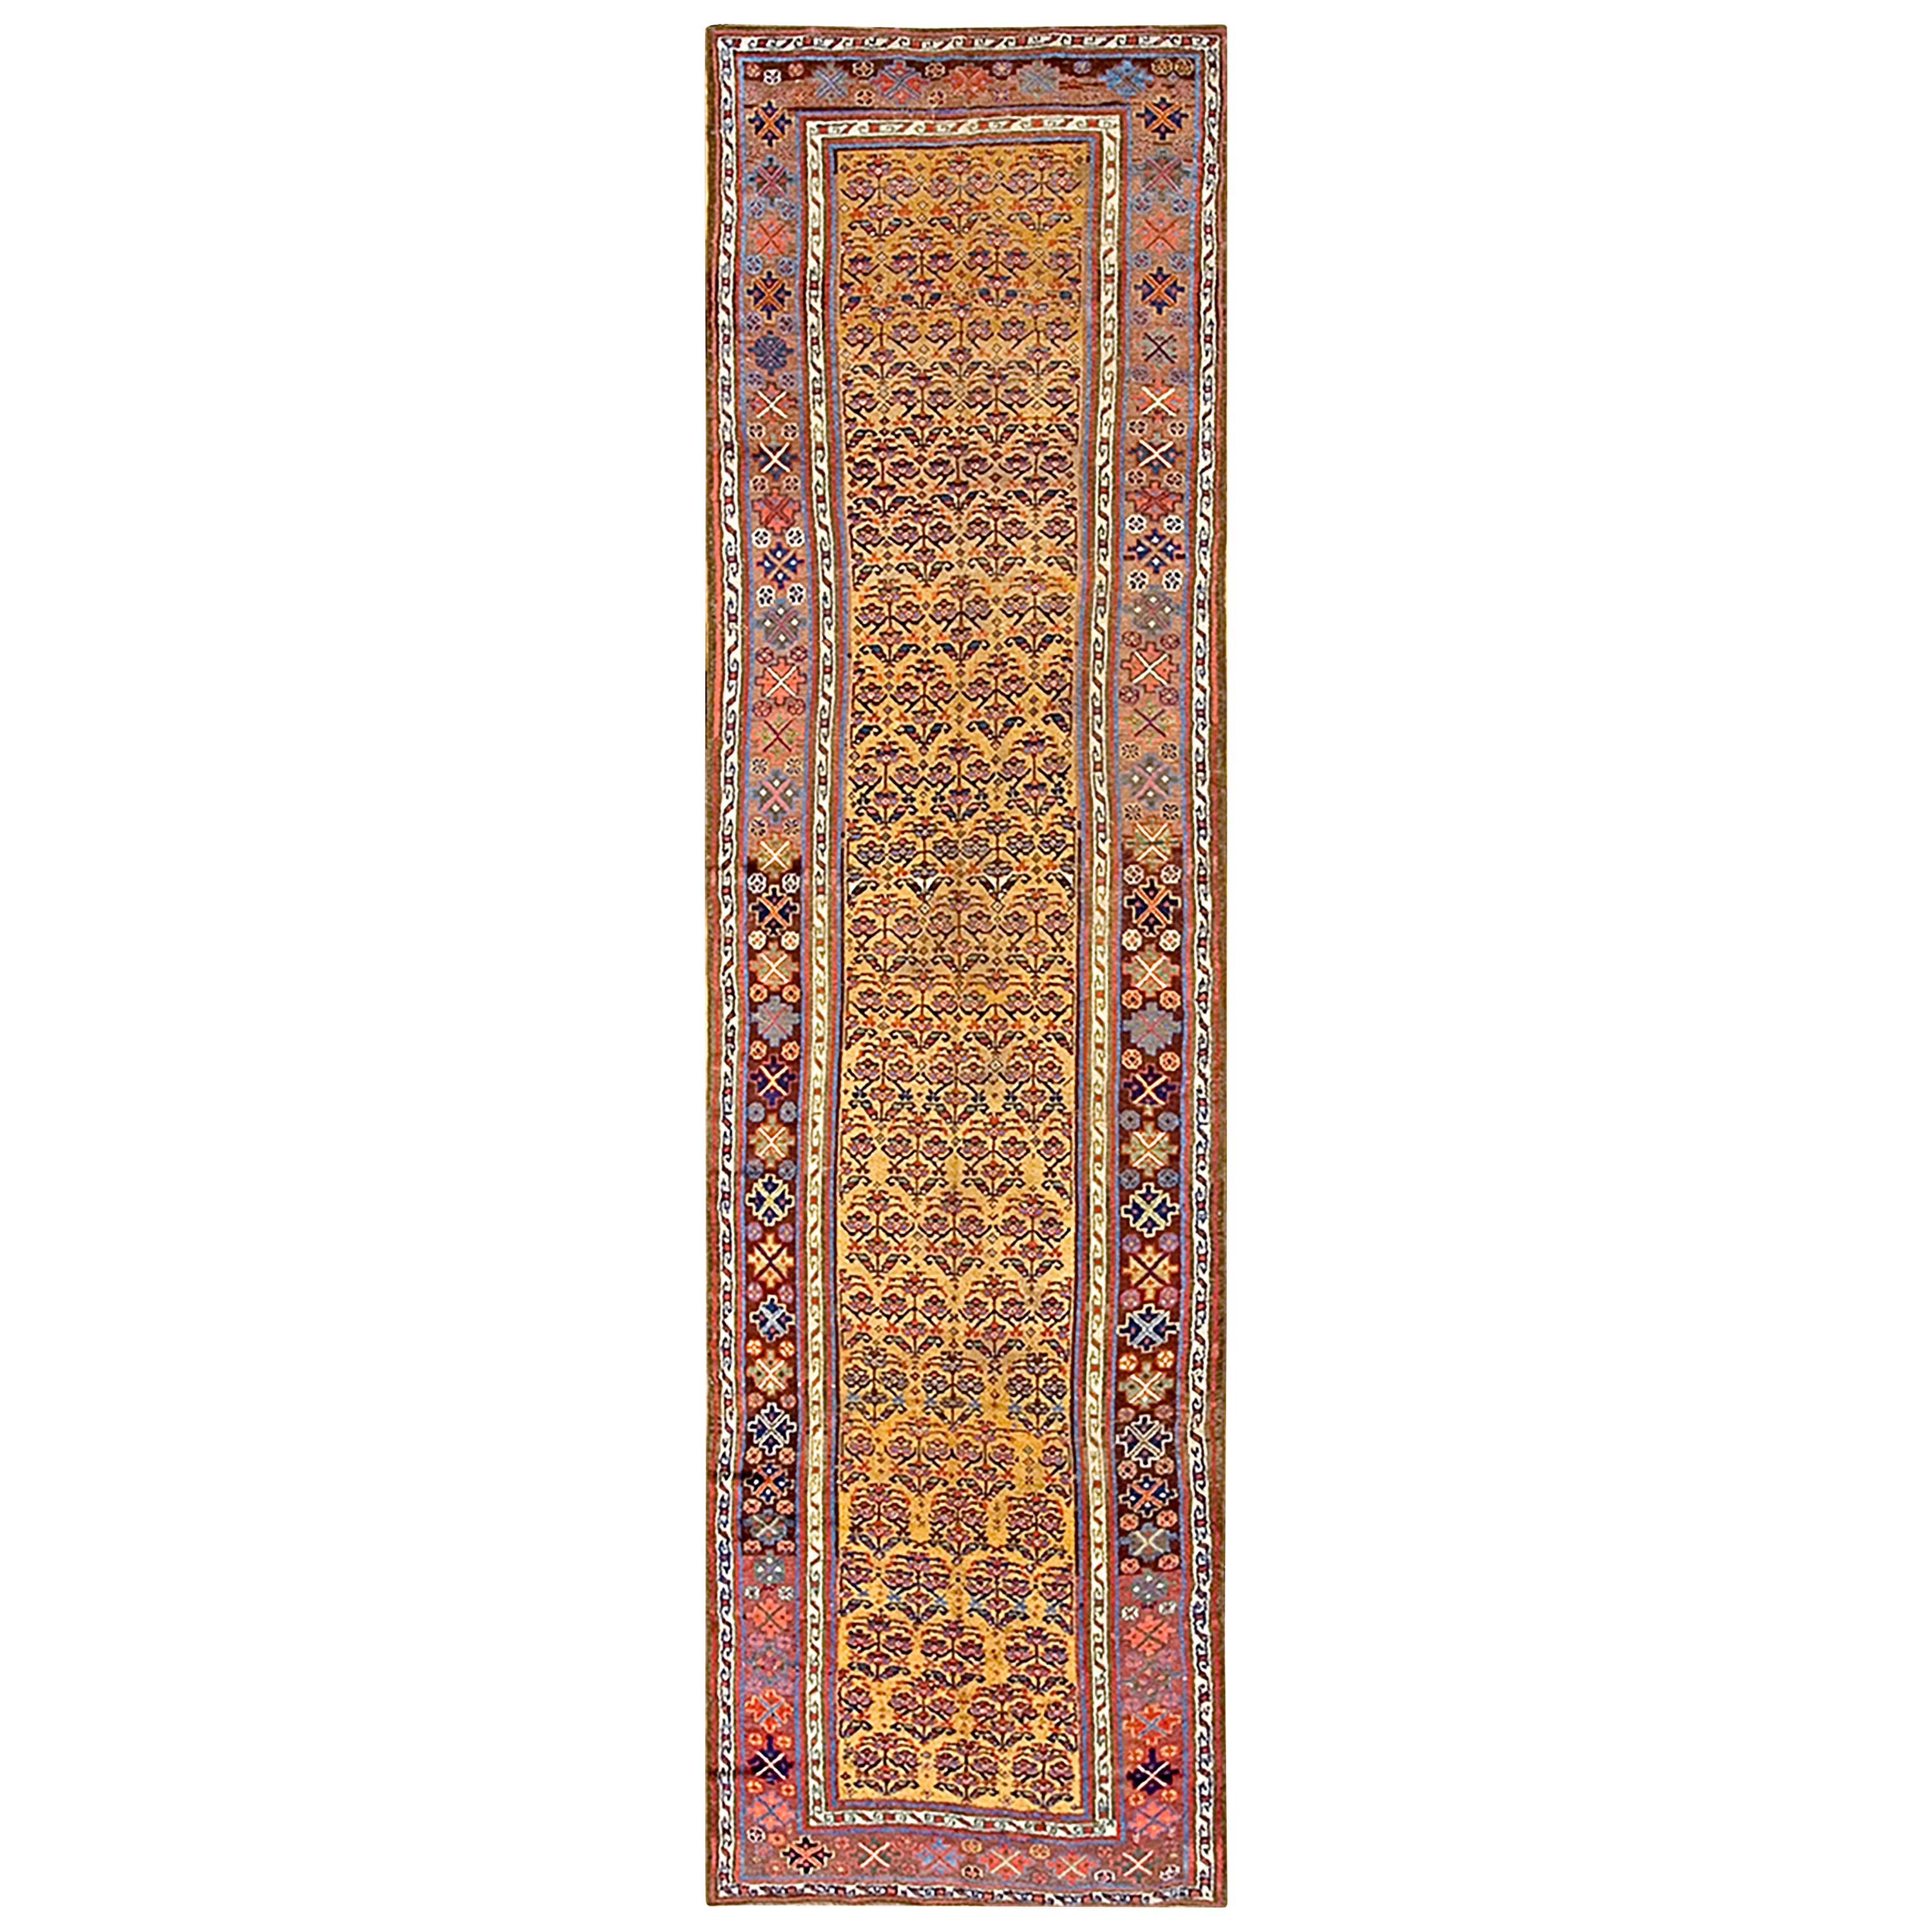 19th Century W. Persian Kurdish Rug ( 3'10" x 13'7" - 117 x 414 )